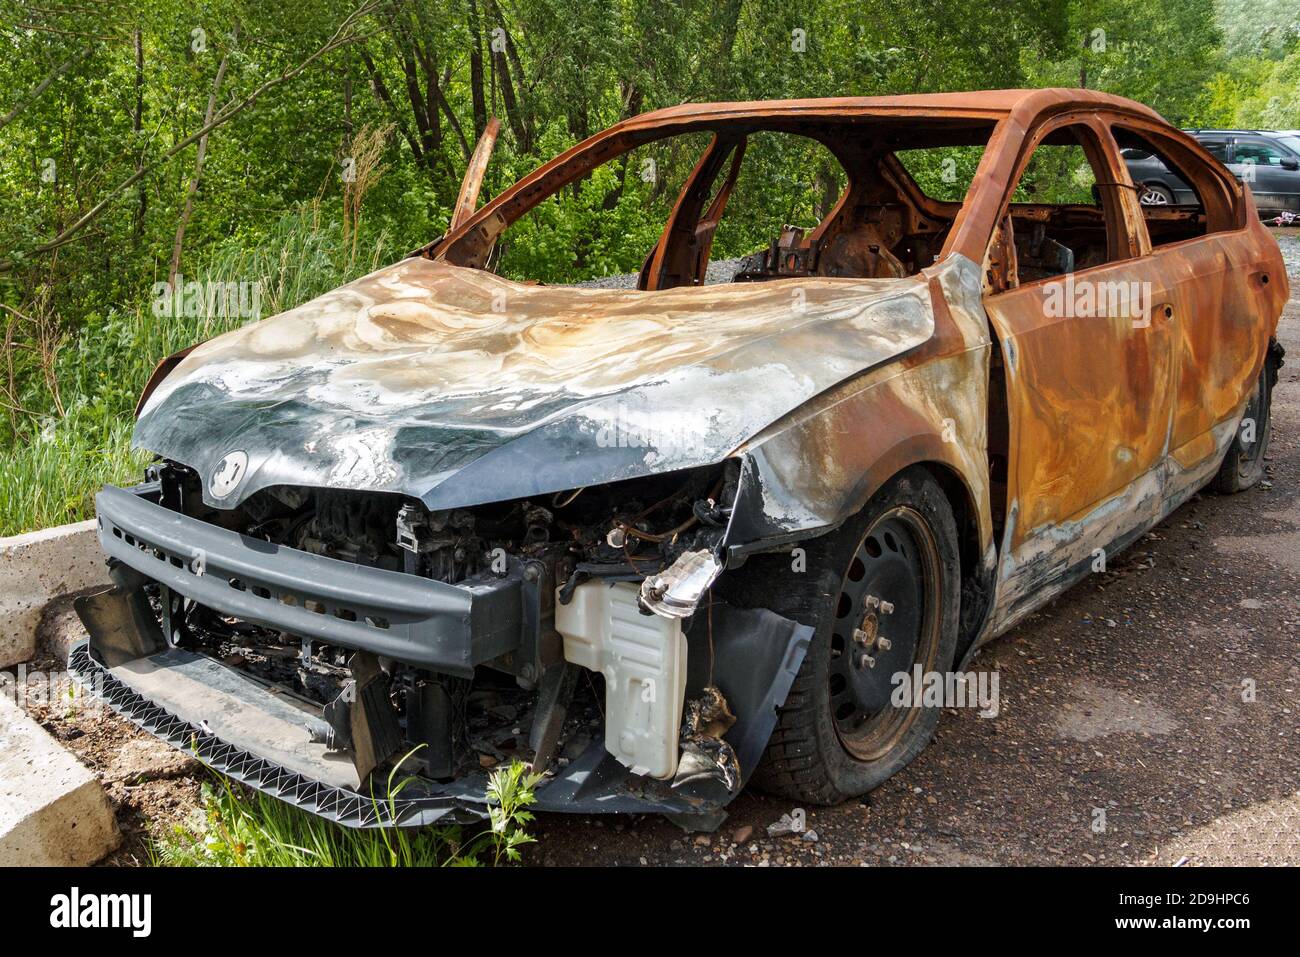 vue avant d'une voiture de tourisme rouillée brûlée sur un jour d'été Banque D'Images